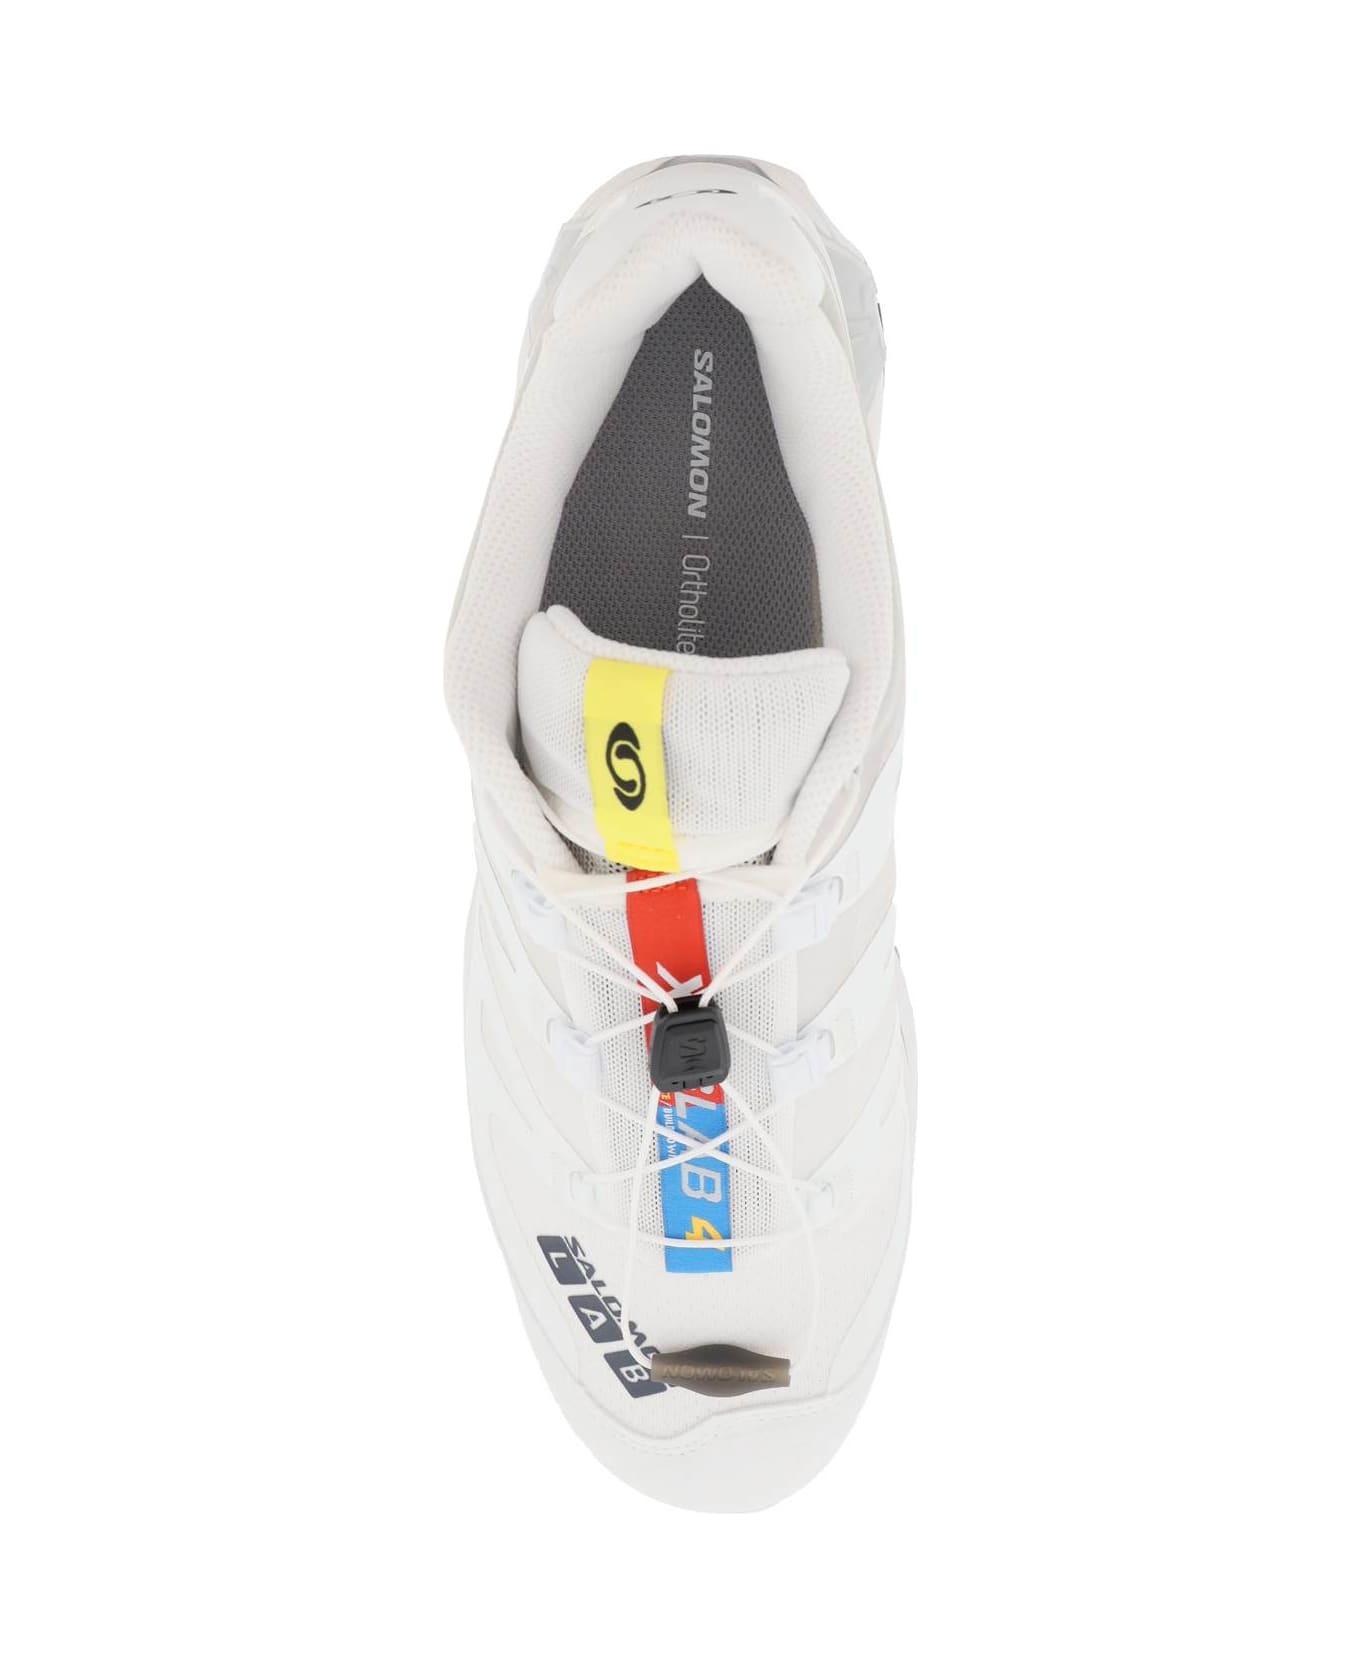 Salomon Xt-4 Og Sneakers - WHITE EBONY LUNAR ROCK (White) スニーカー